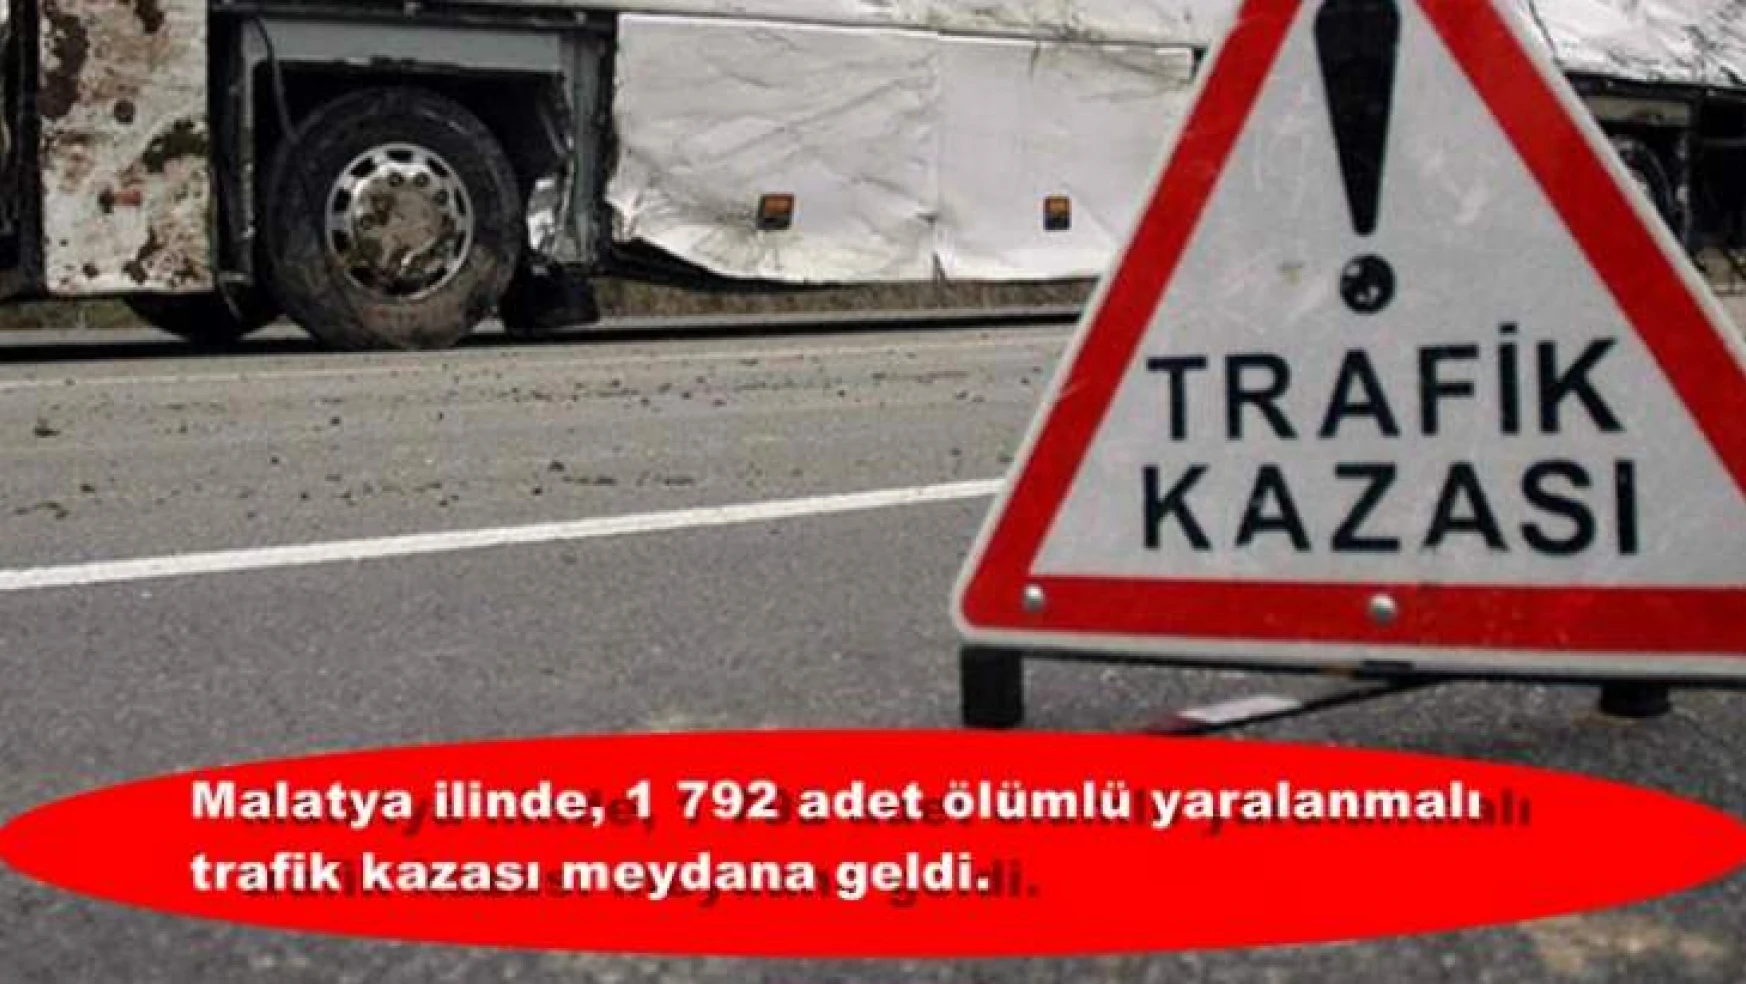 Malatya ilinde, 1 792 adet ölümlü yaralanmalı trafik kazası meydana geldi.